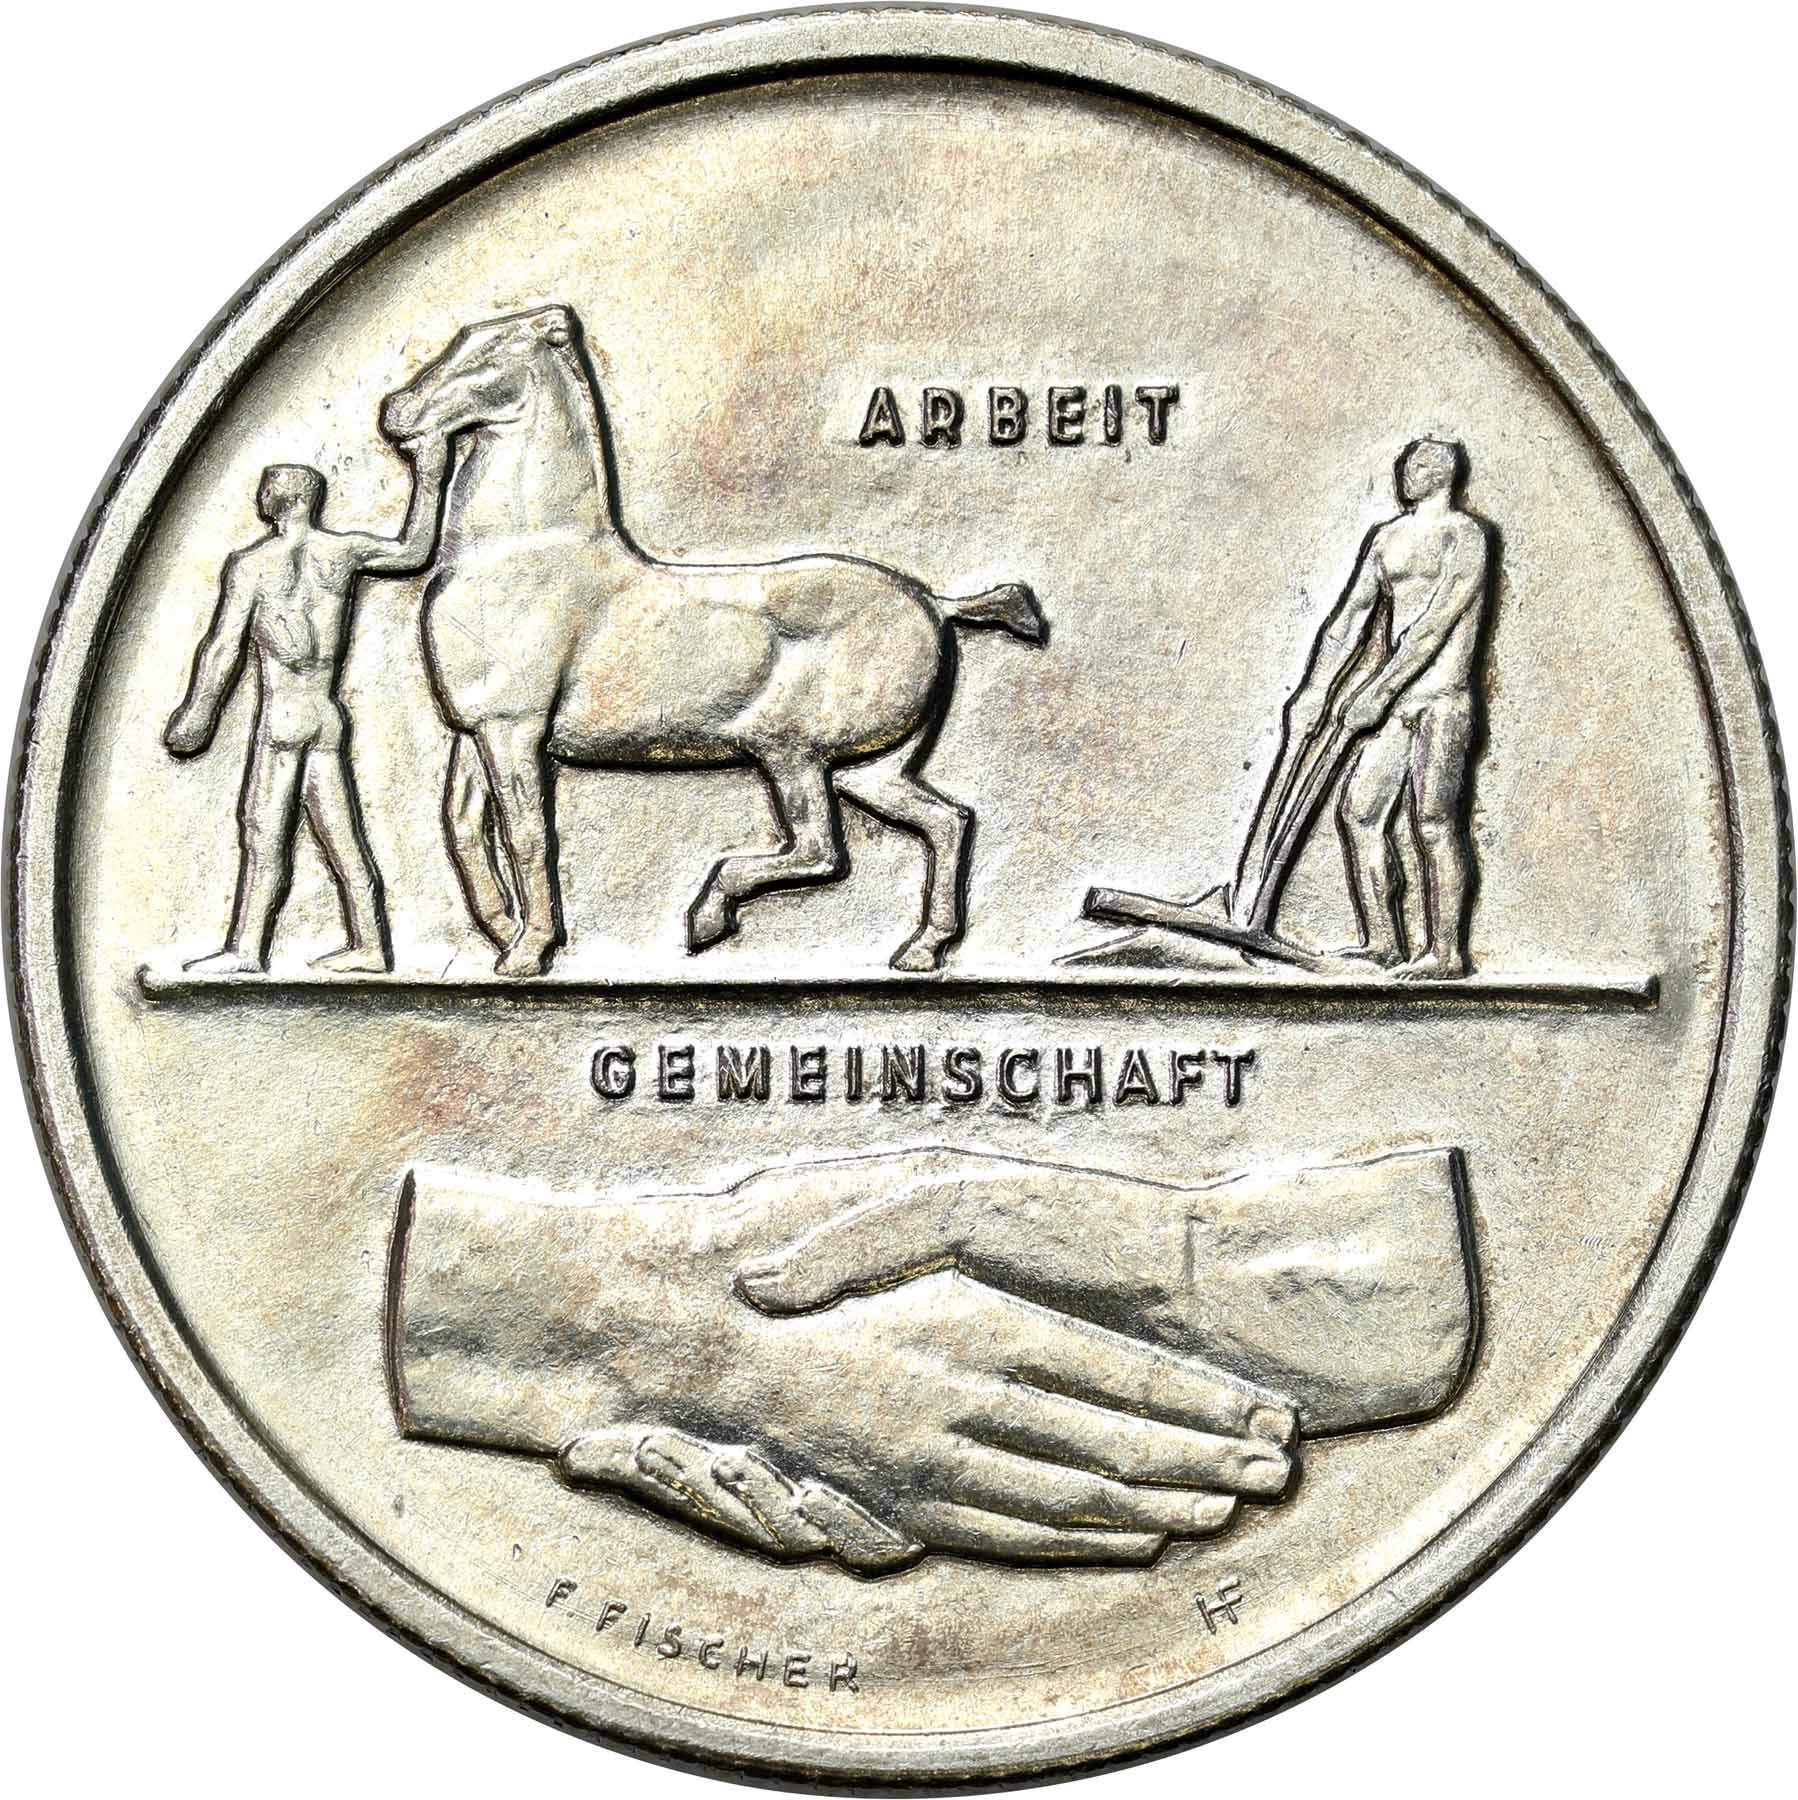 Szwajcaria. 5 franków 1939 Wystawa Narodowa w Zurychu